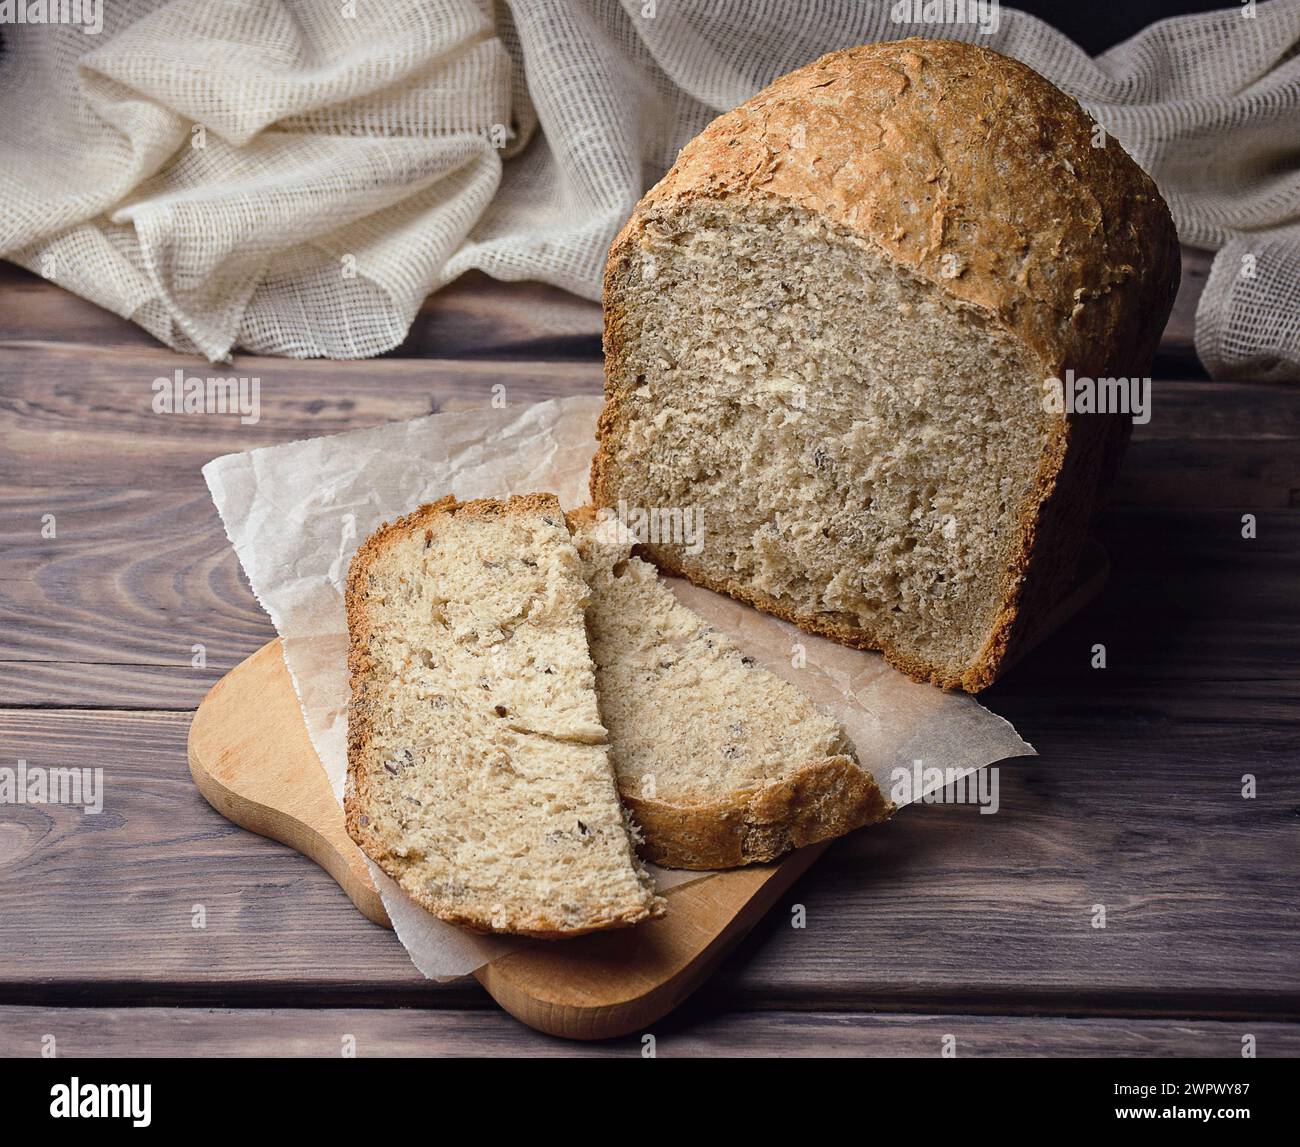 Pane di grano integrale fresco fatto in casa. Consistenza del pane. Pane tradizionale a lievitazione naturale tagliato a fette su uno sfondo rustico in legno. Concetto di tradizione Foto Stock